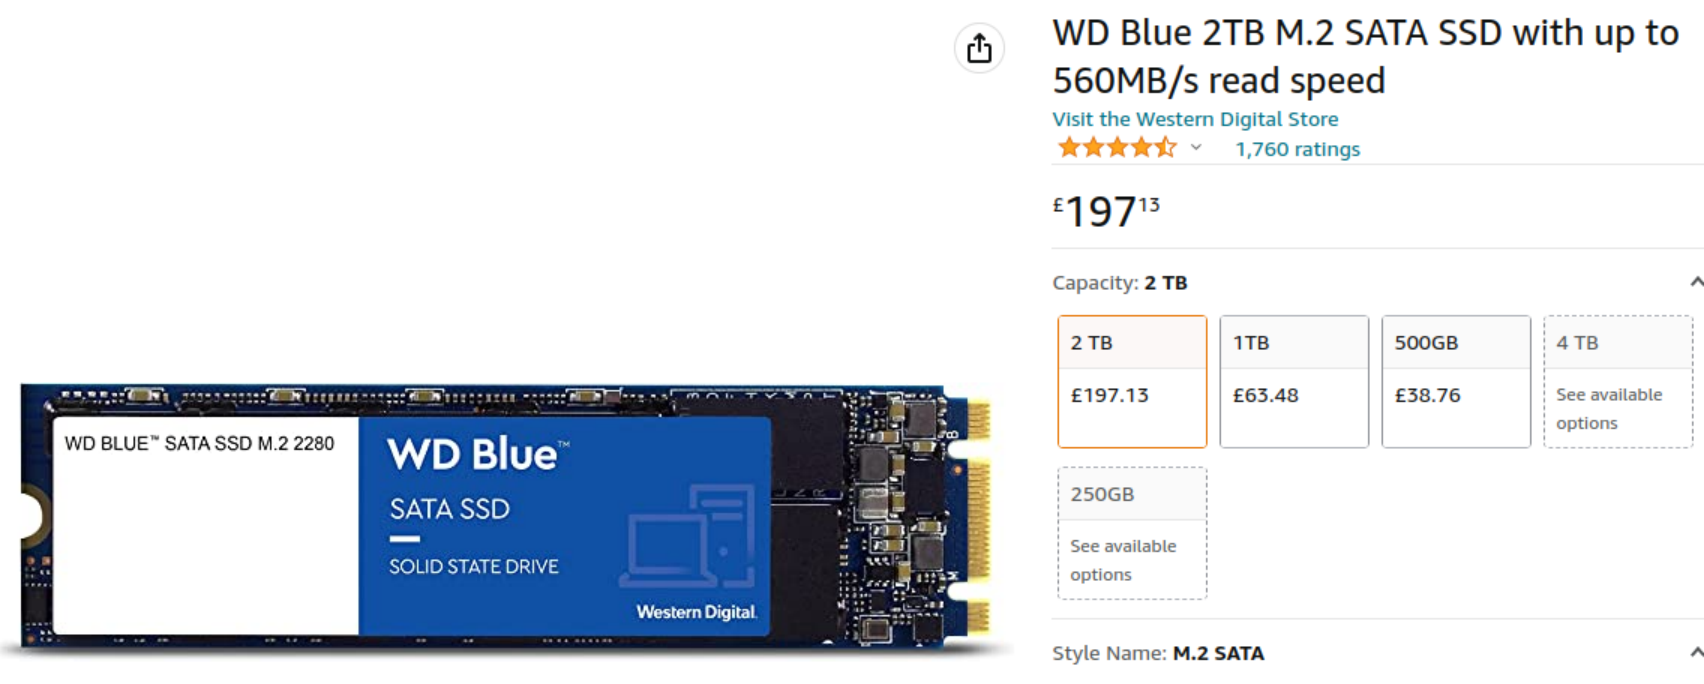 WD Blue M.2 SATA SSD 2TB.png